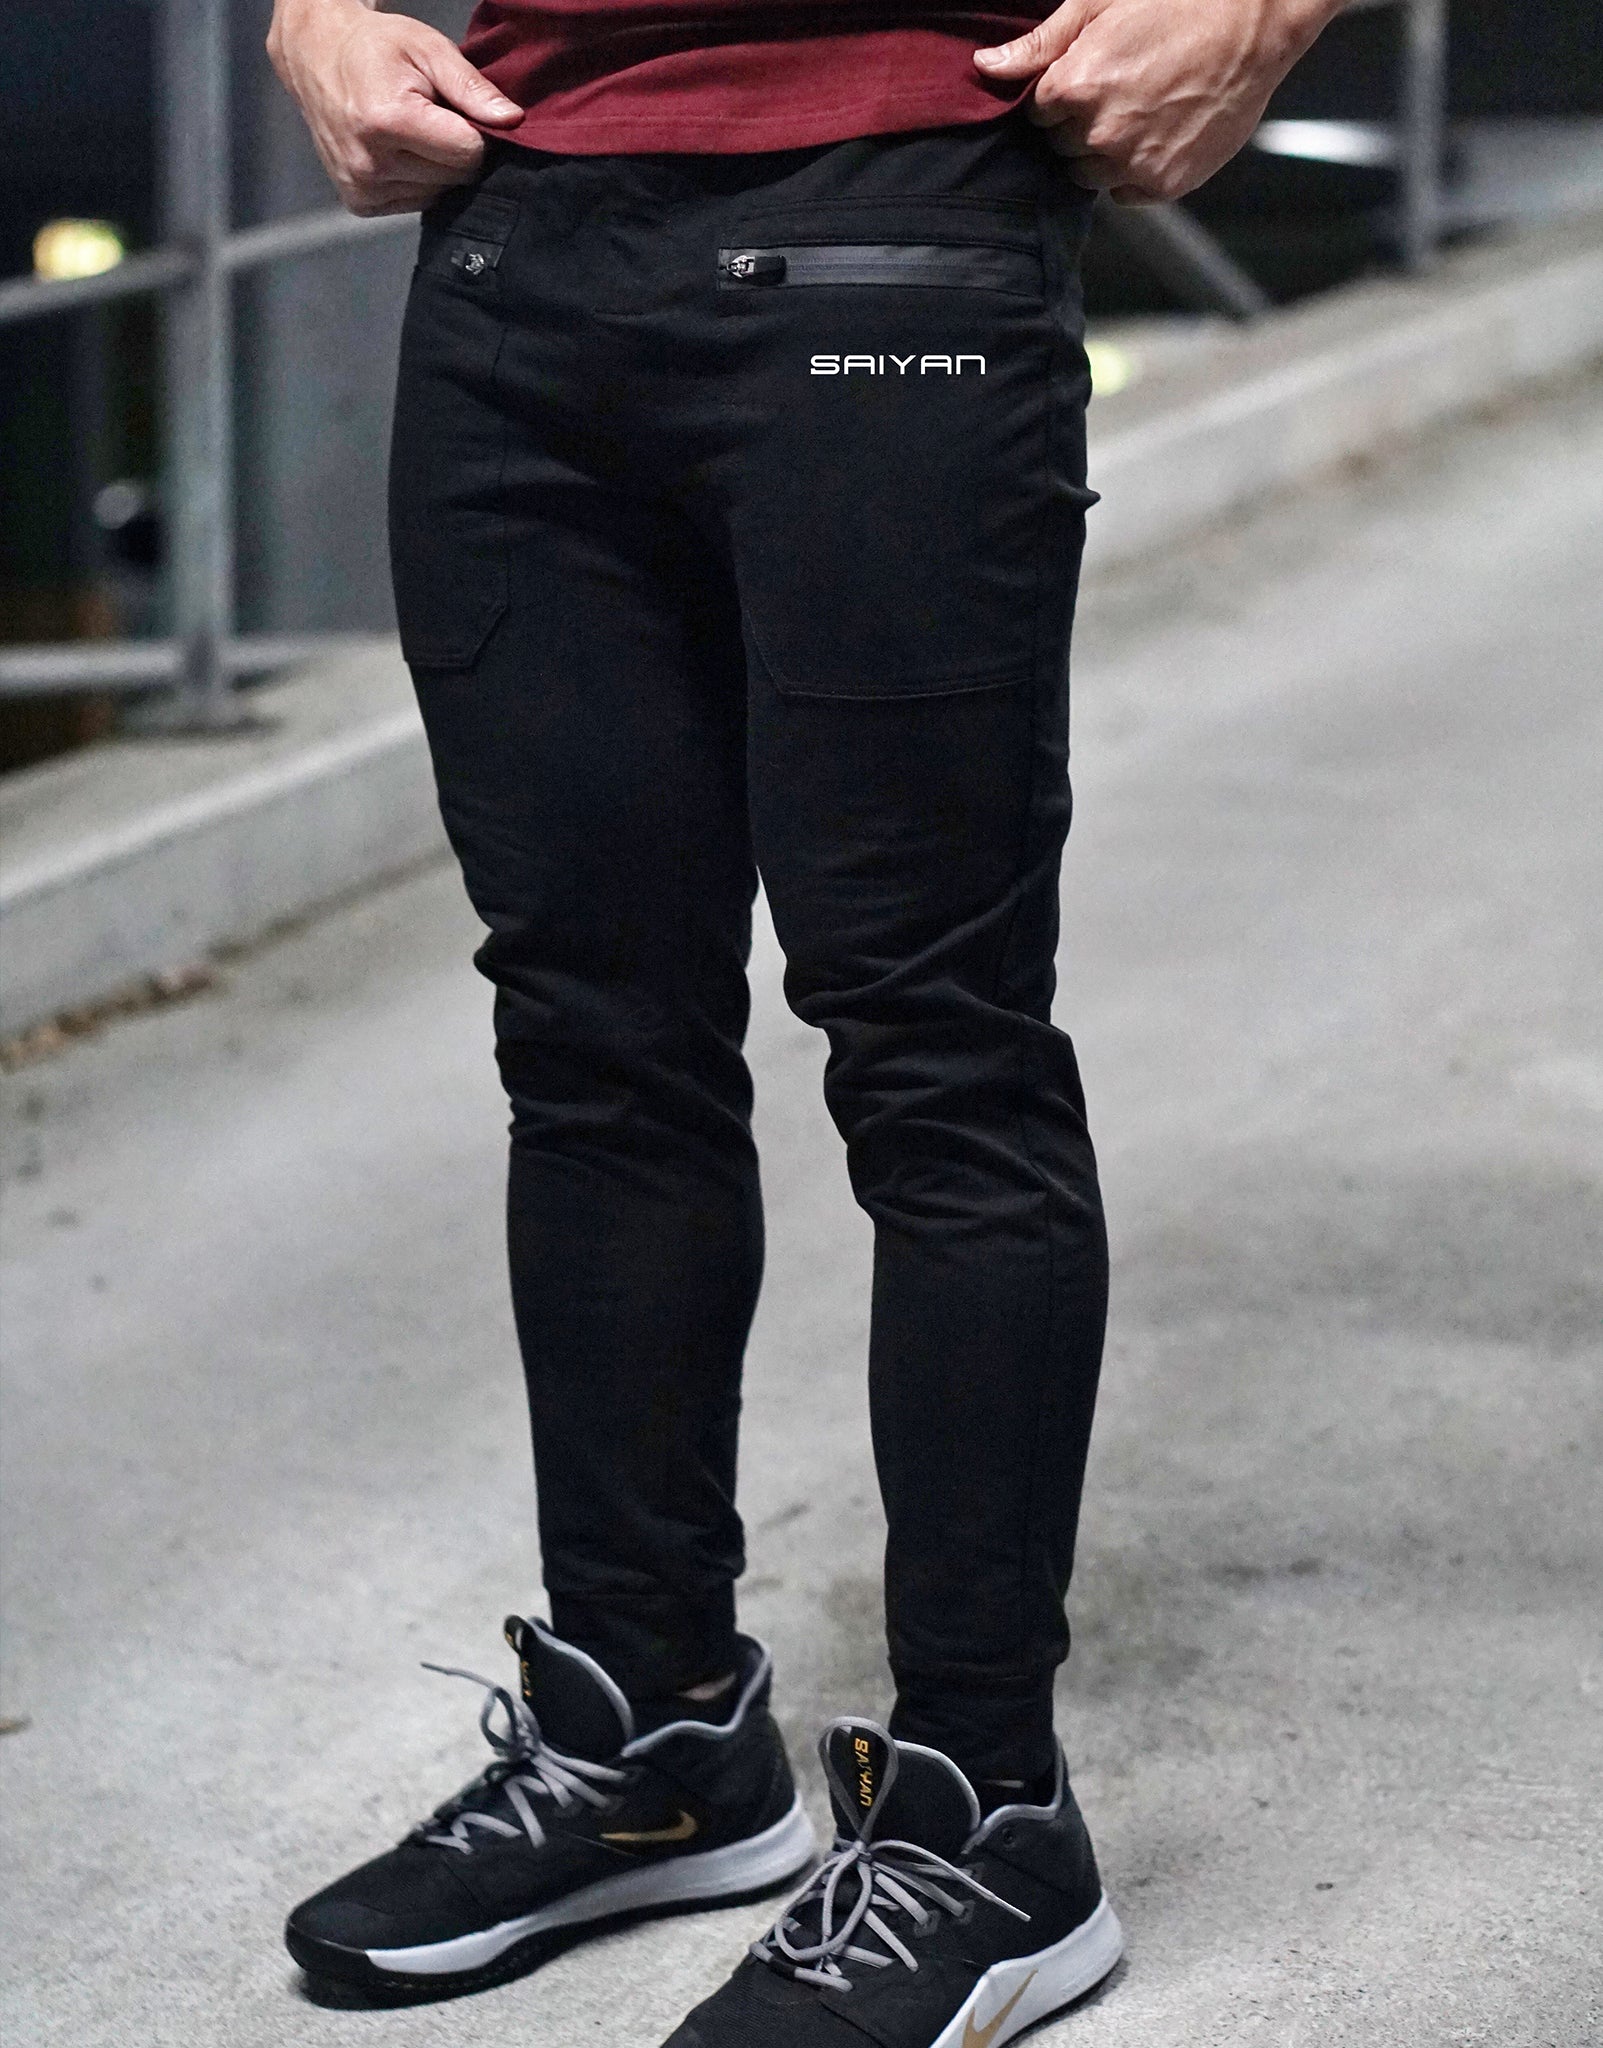 V2 'SAIYAN' Fitted Pants - Elite Black